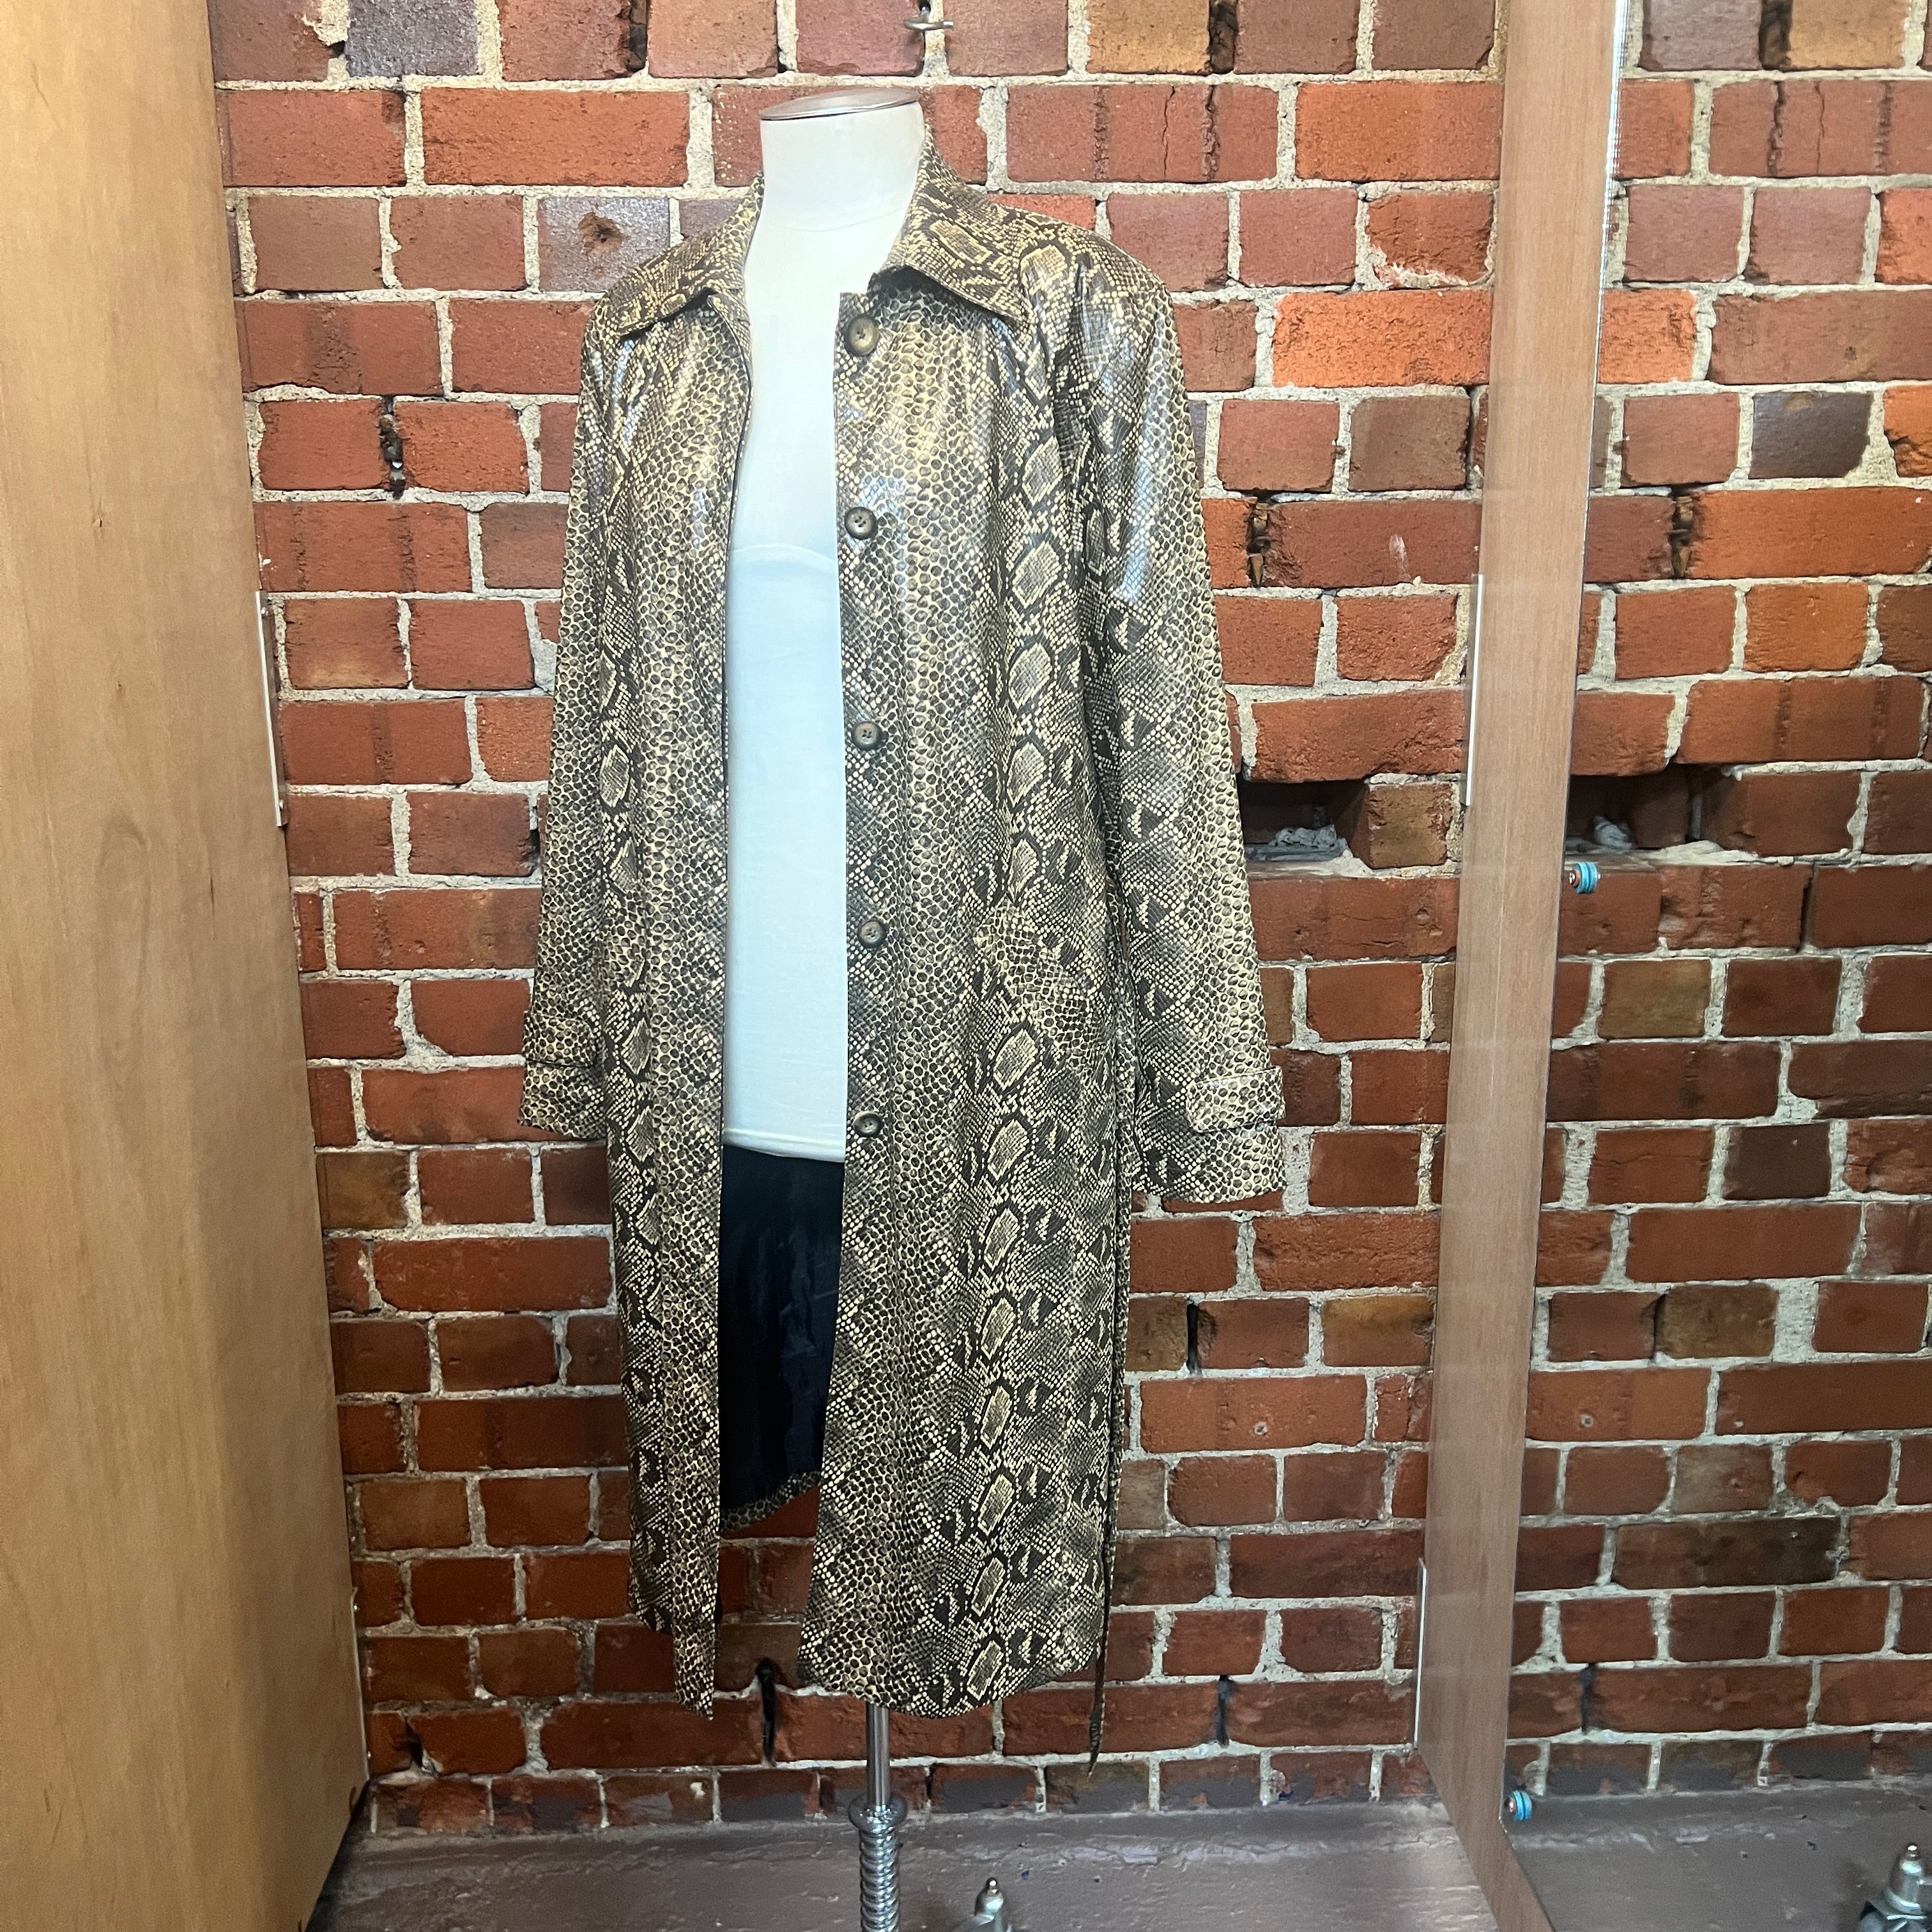 SNAKESKIN vinyl trench coat